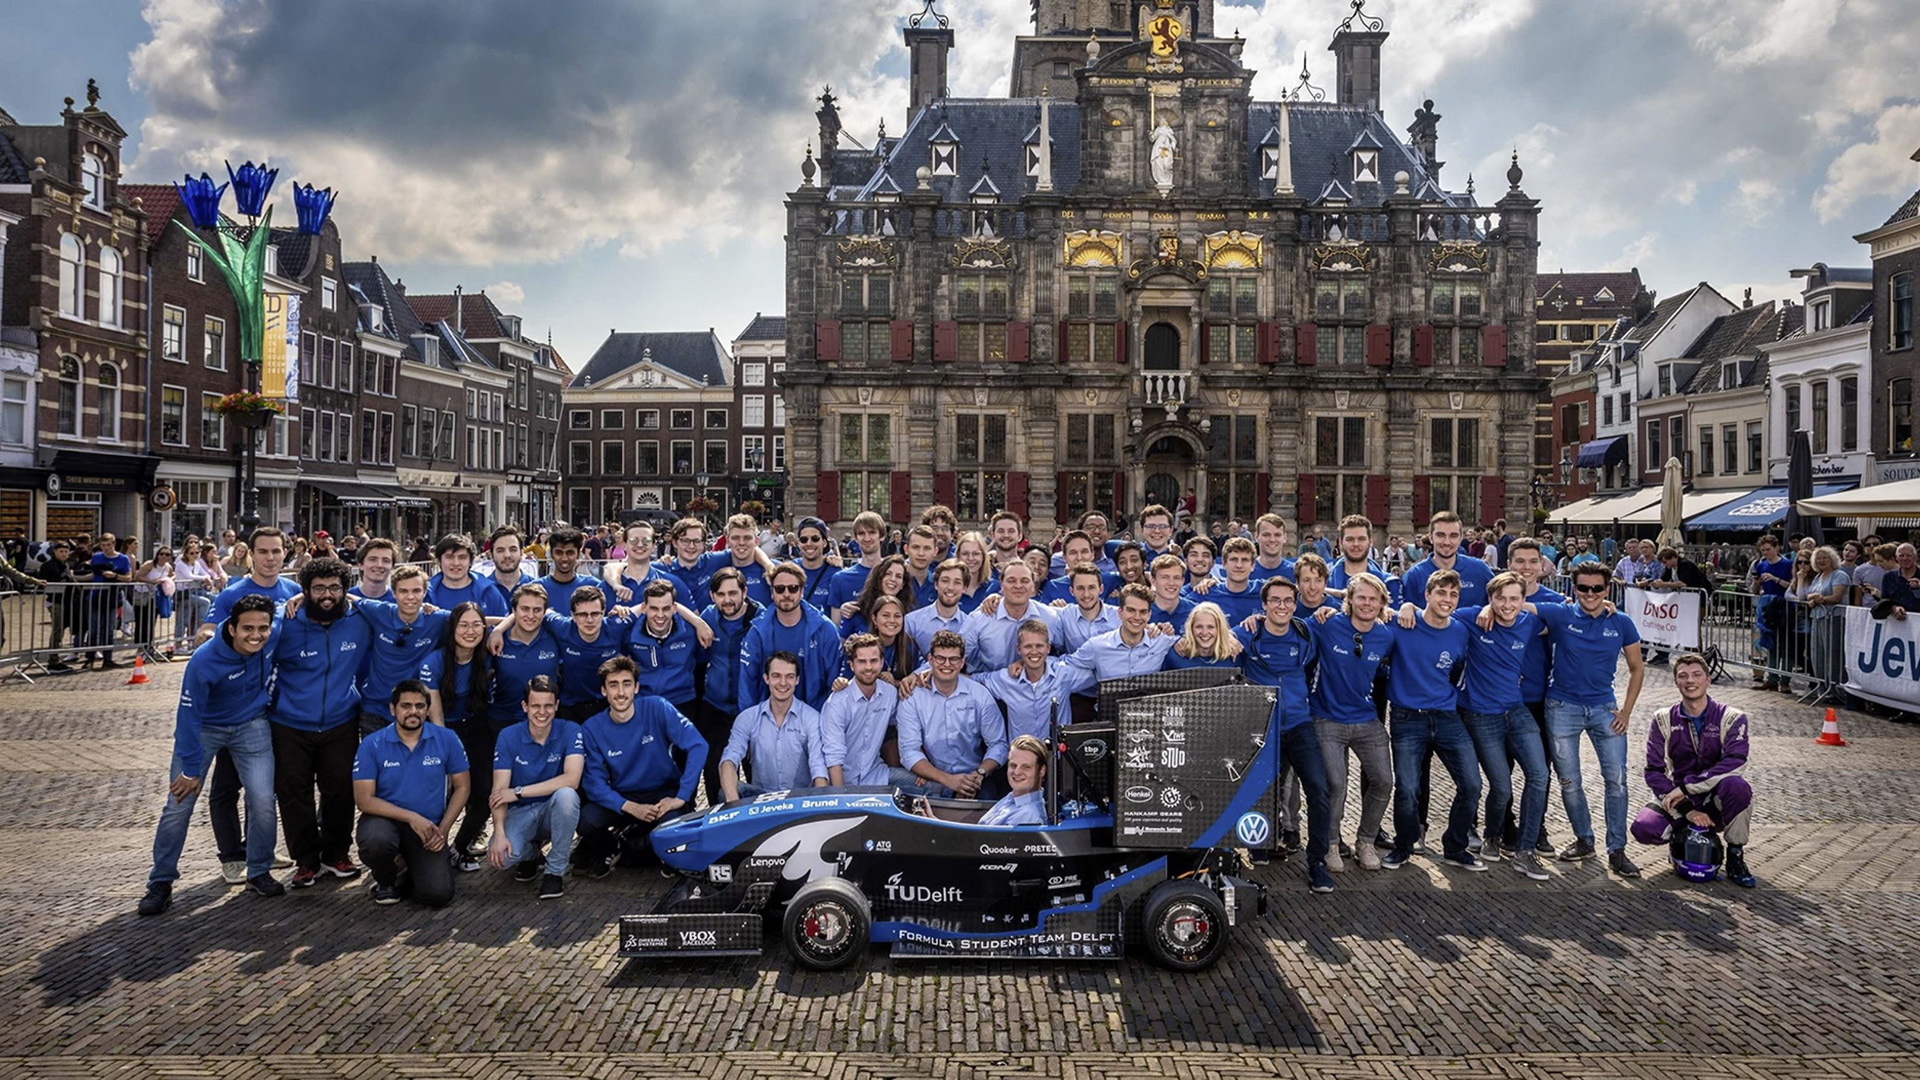 L’équipe de la Delft University of Technology et leur voiture de Formule 1